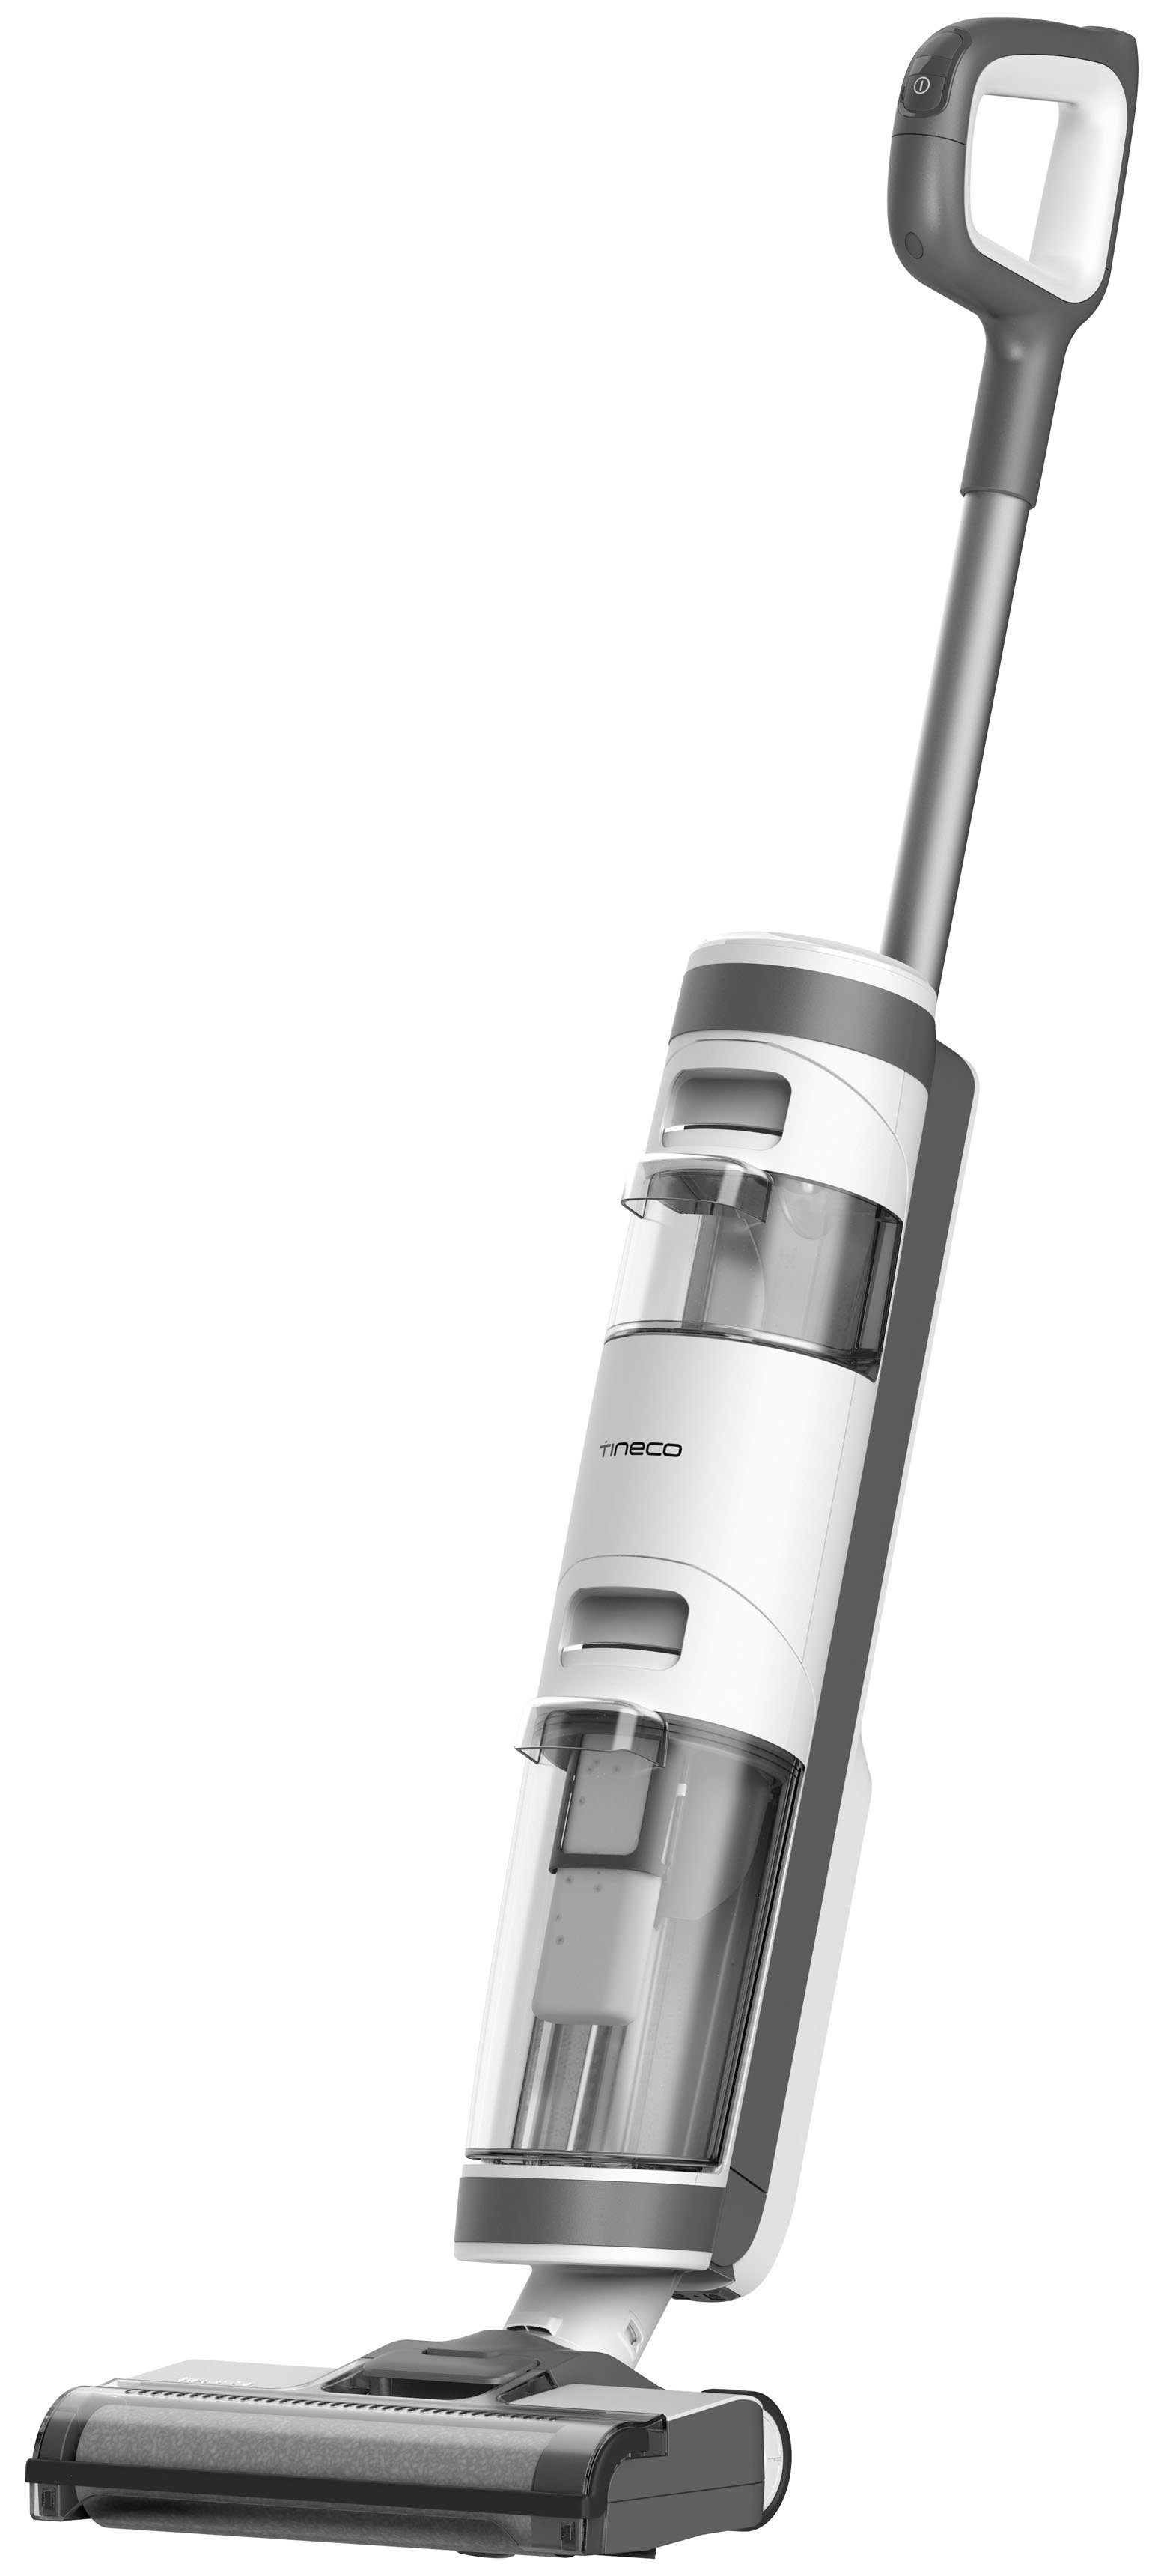 Tineco Nass-Trocken-Akkusauger iFloor 3 Plus Nass-Trocken Akkusauger, alle Hartböden, kabellos, 220 W, beutellos, mit Selbstreinigung, mit LED Display, bis zu 25 Min Laufzeit